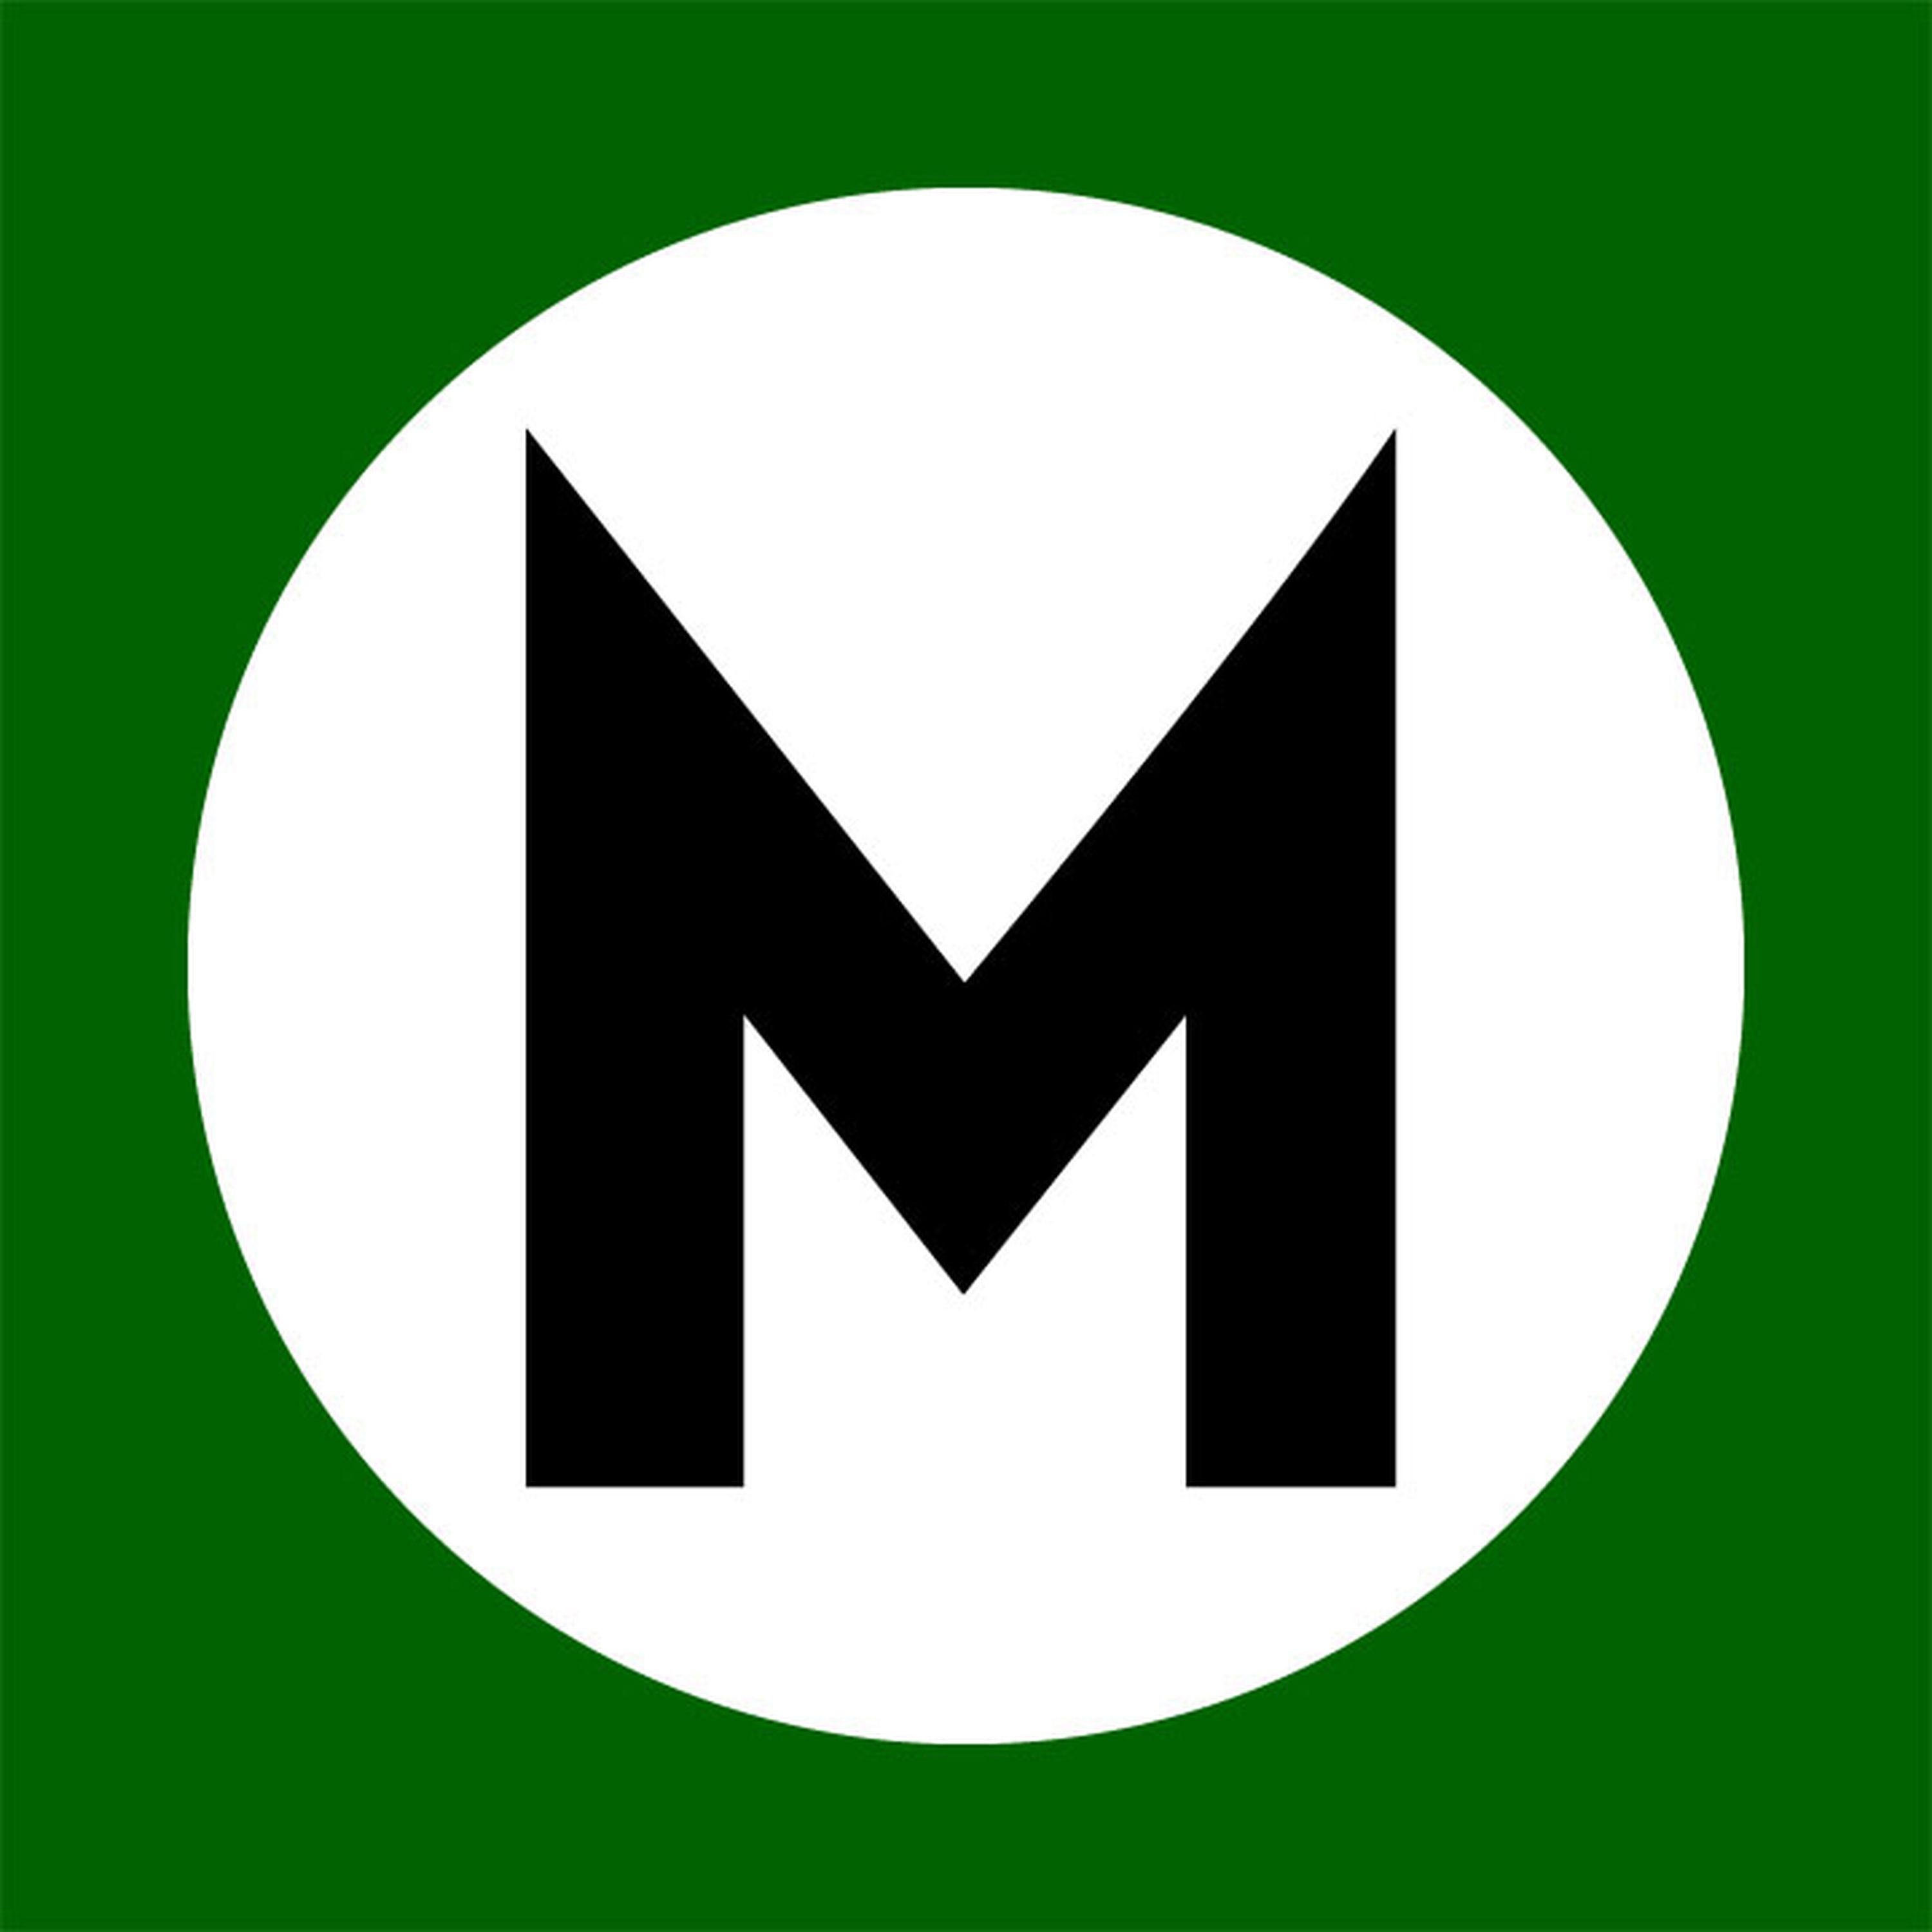 Jochen Mass podcast, in association with Mercedes-Benz